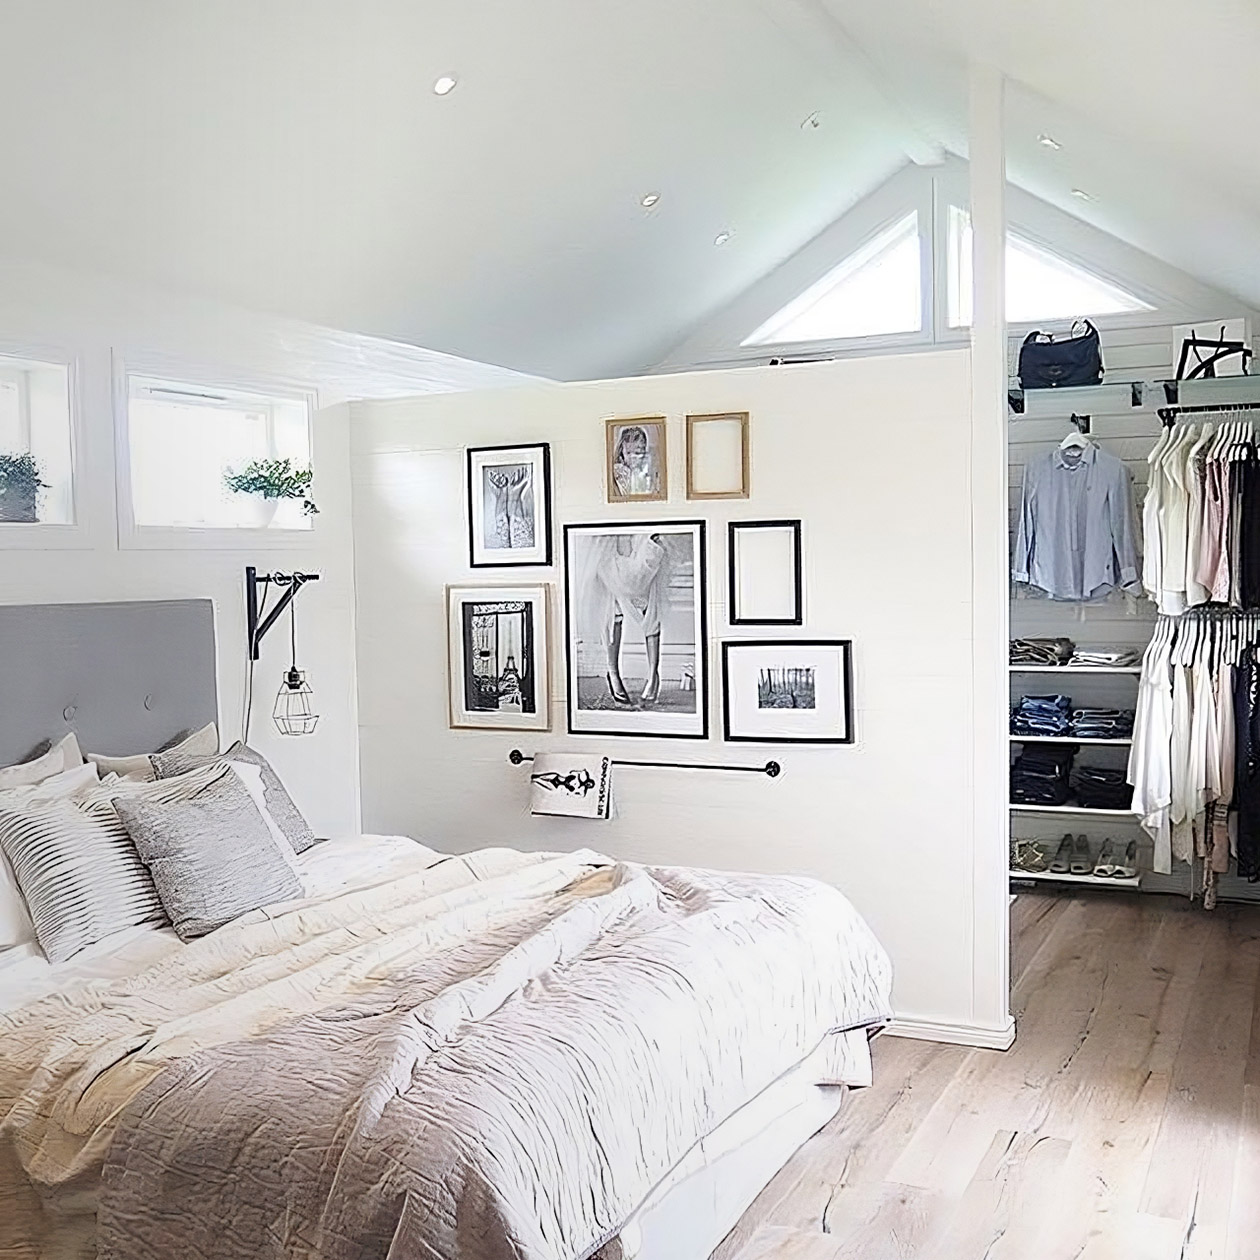 Спальная зона отделена от гардеробной перегородкой из гипсокартона, которая не доходит до потолка: это позволяет сделать помещение более светлым. Источник: idei.club